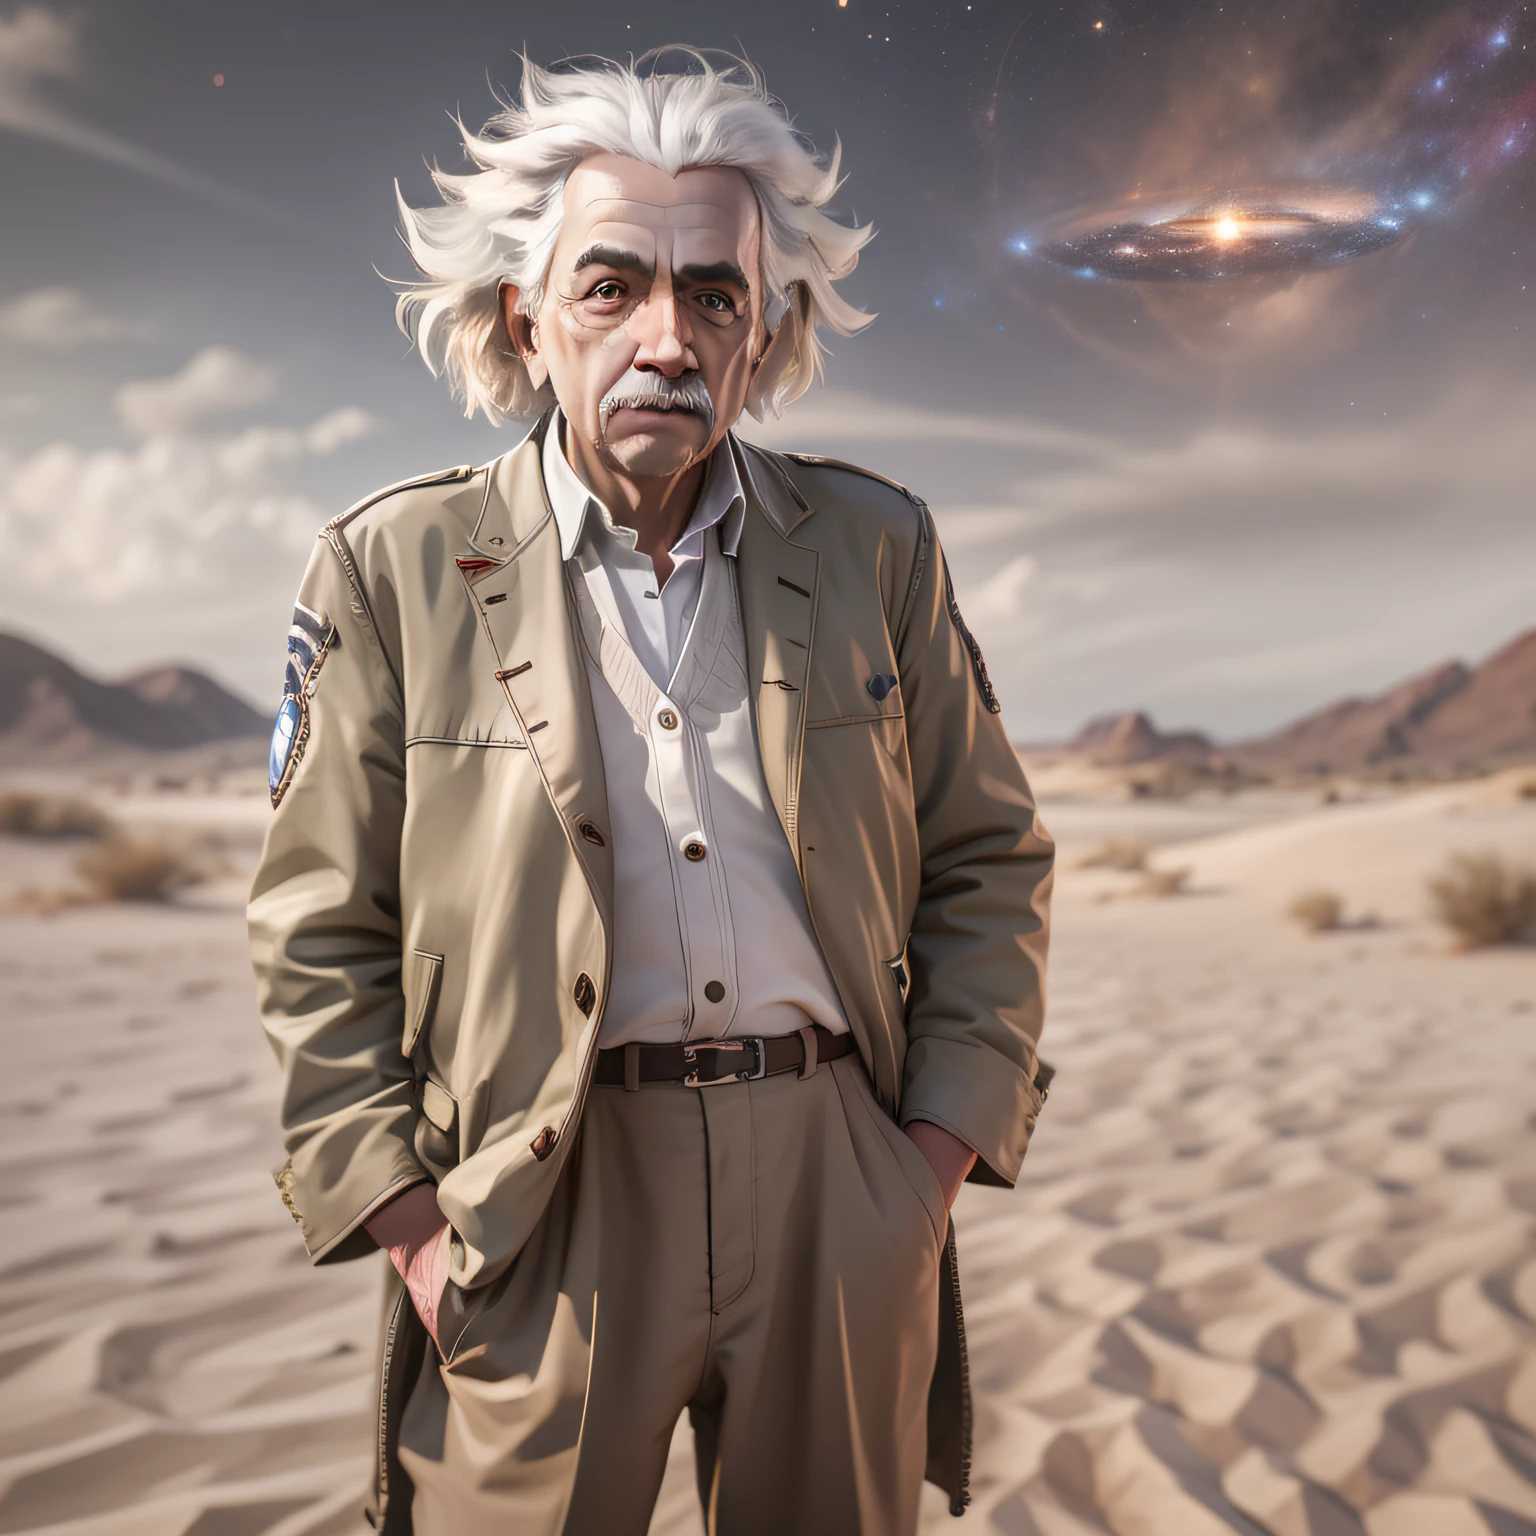 アルバート・アインシュタインの全身肖像, 超リアル, 神のように, 砂漠の服, 超詳細, ハッセルブラッドH4D 200MSデジタルカメラで撮影, ミタコン スピードマスター 65mm f/ 1. 4XCD, 銀河, 次元効果, フレネル照明